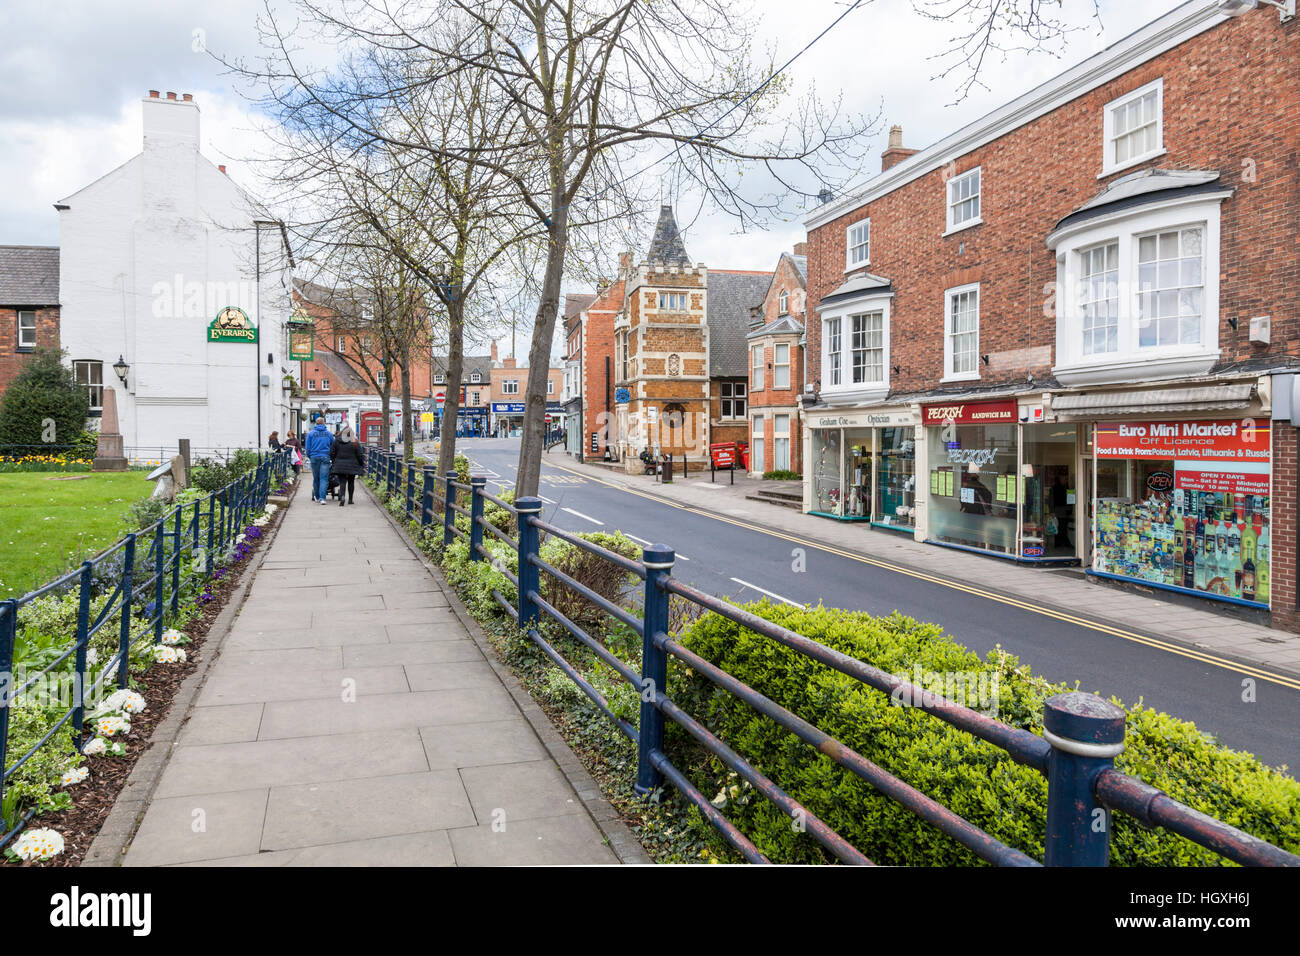 Eine typische Straße in einer englischen Kleinstadt. Burton Street, Melton Mowbray, Leicestershire, England, Großbritannien Stockfoto